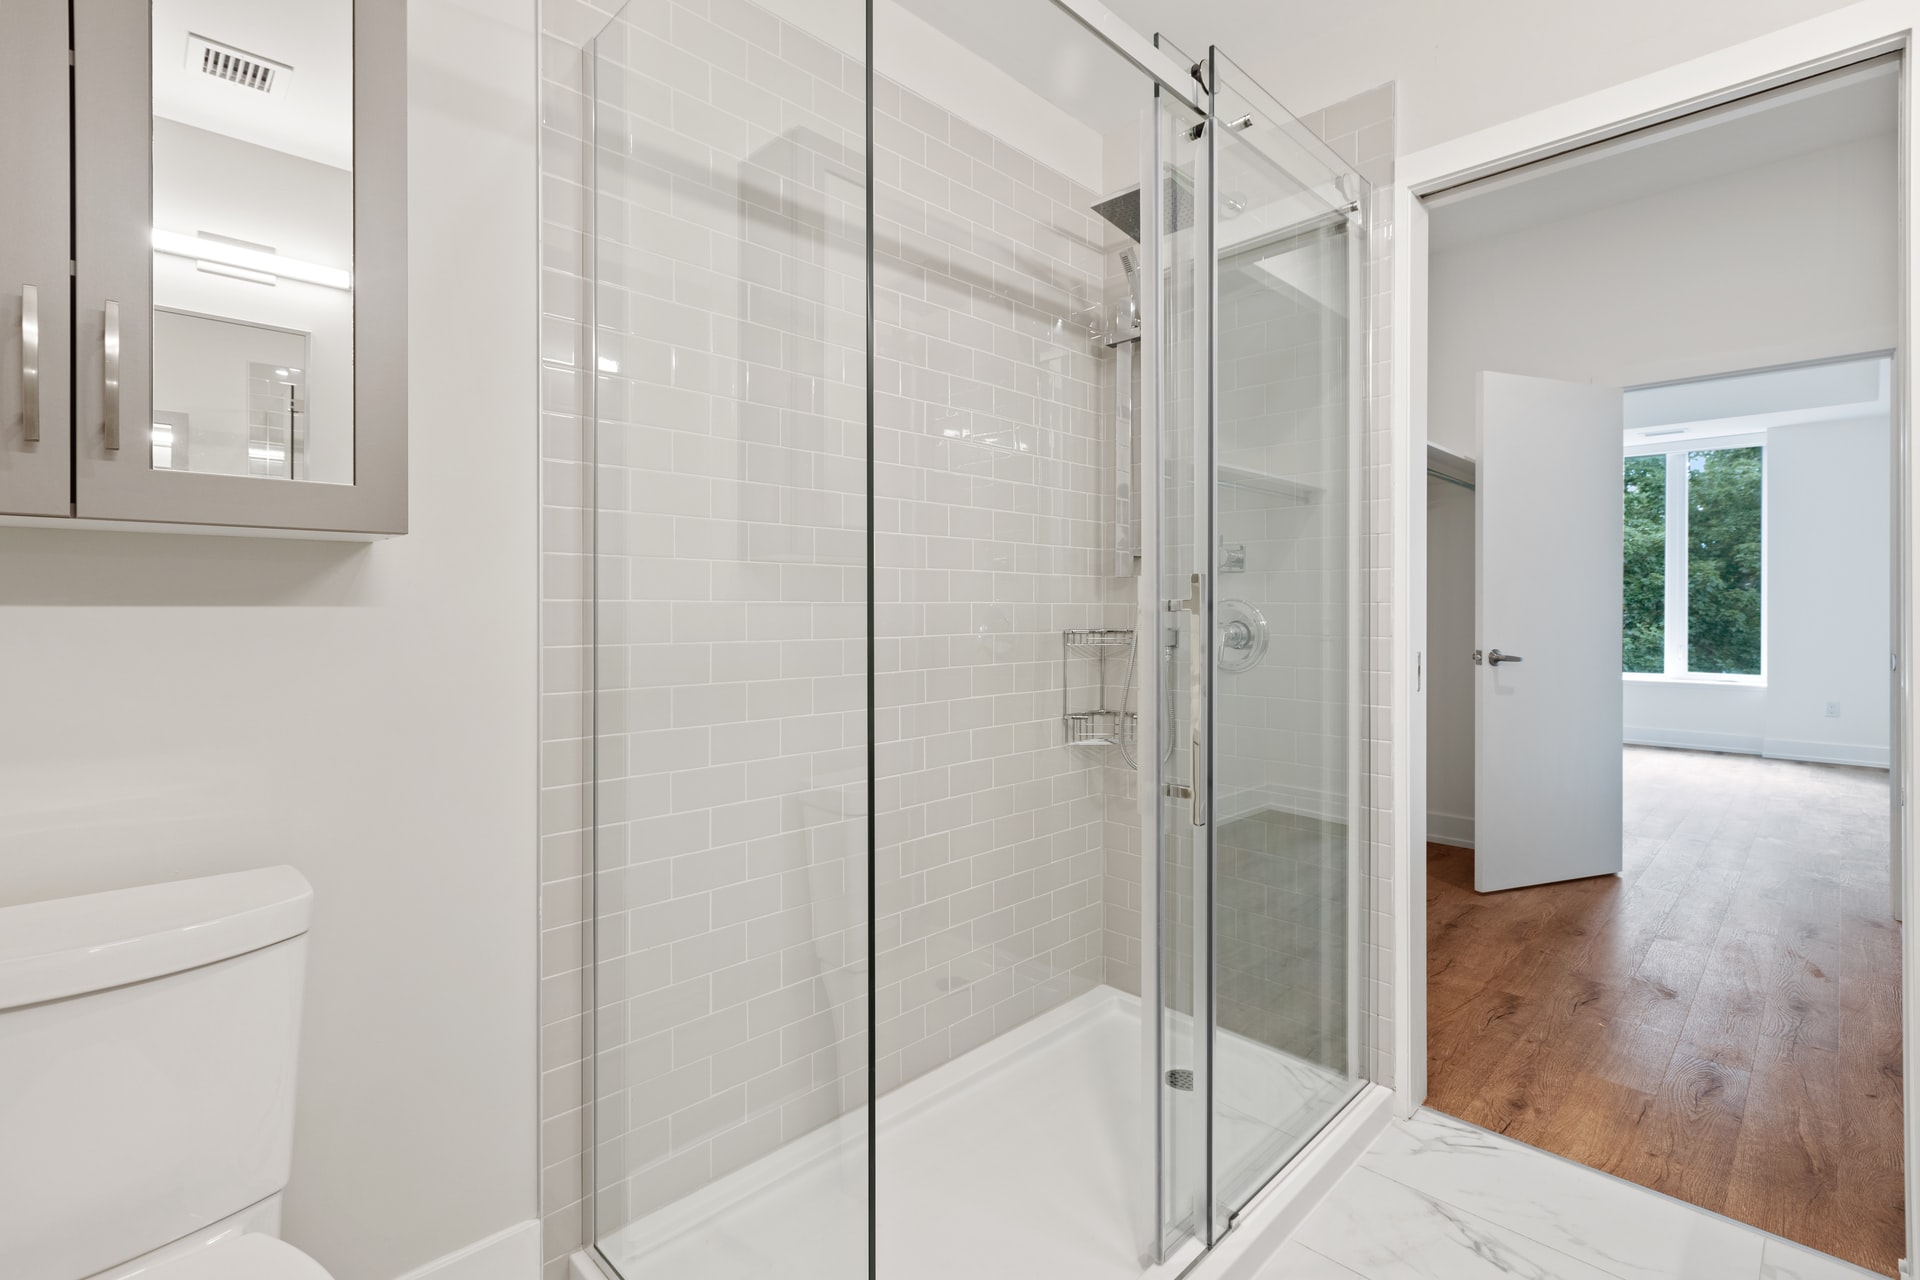 Drzwi przesuwne do prysznica kontra wanna z kabiną prysznicową — rozwiązania do małych łazienek